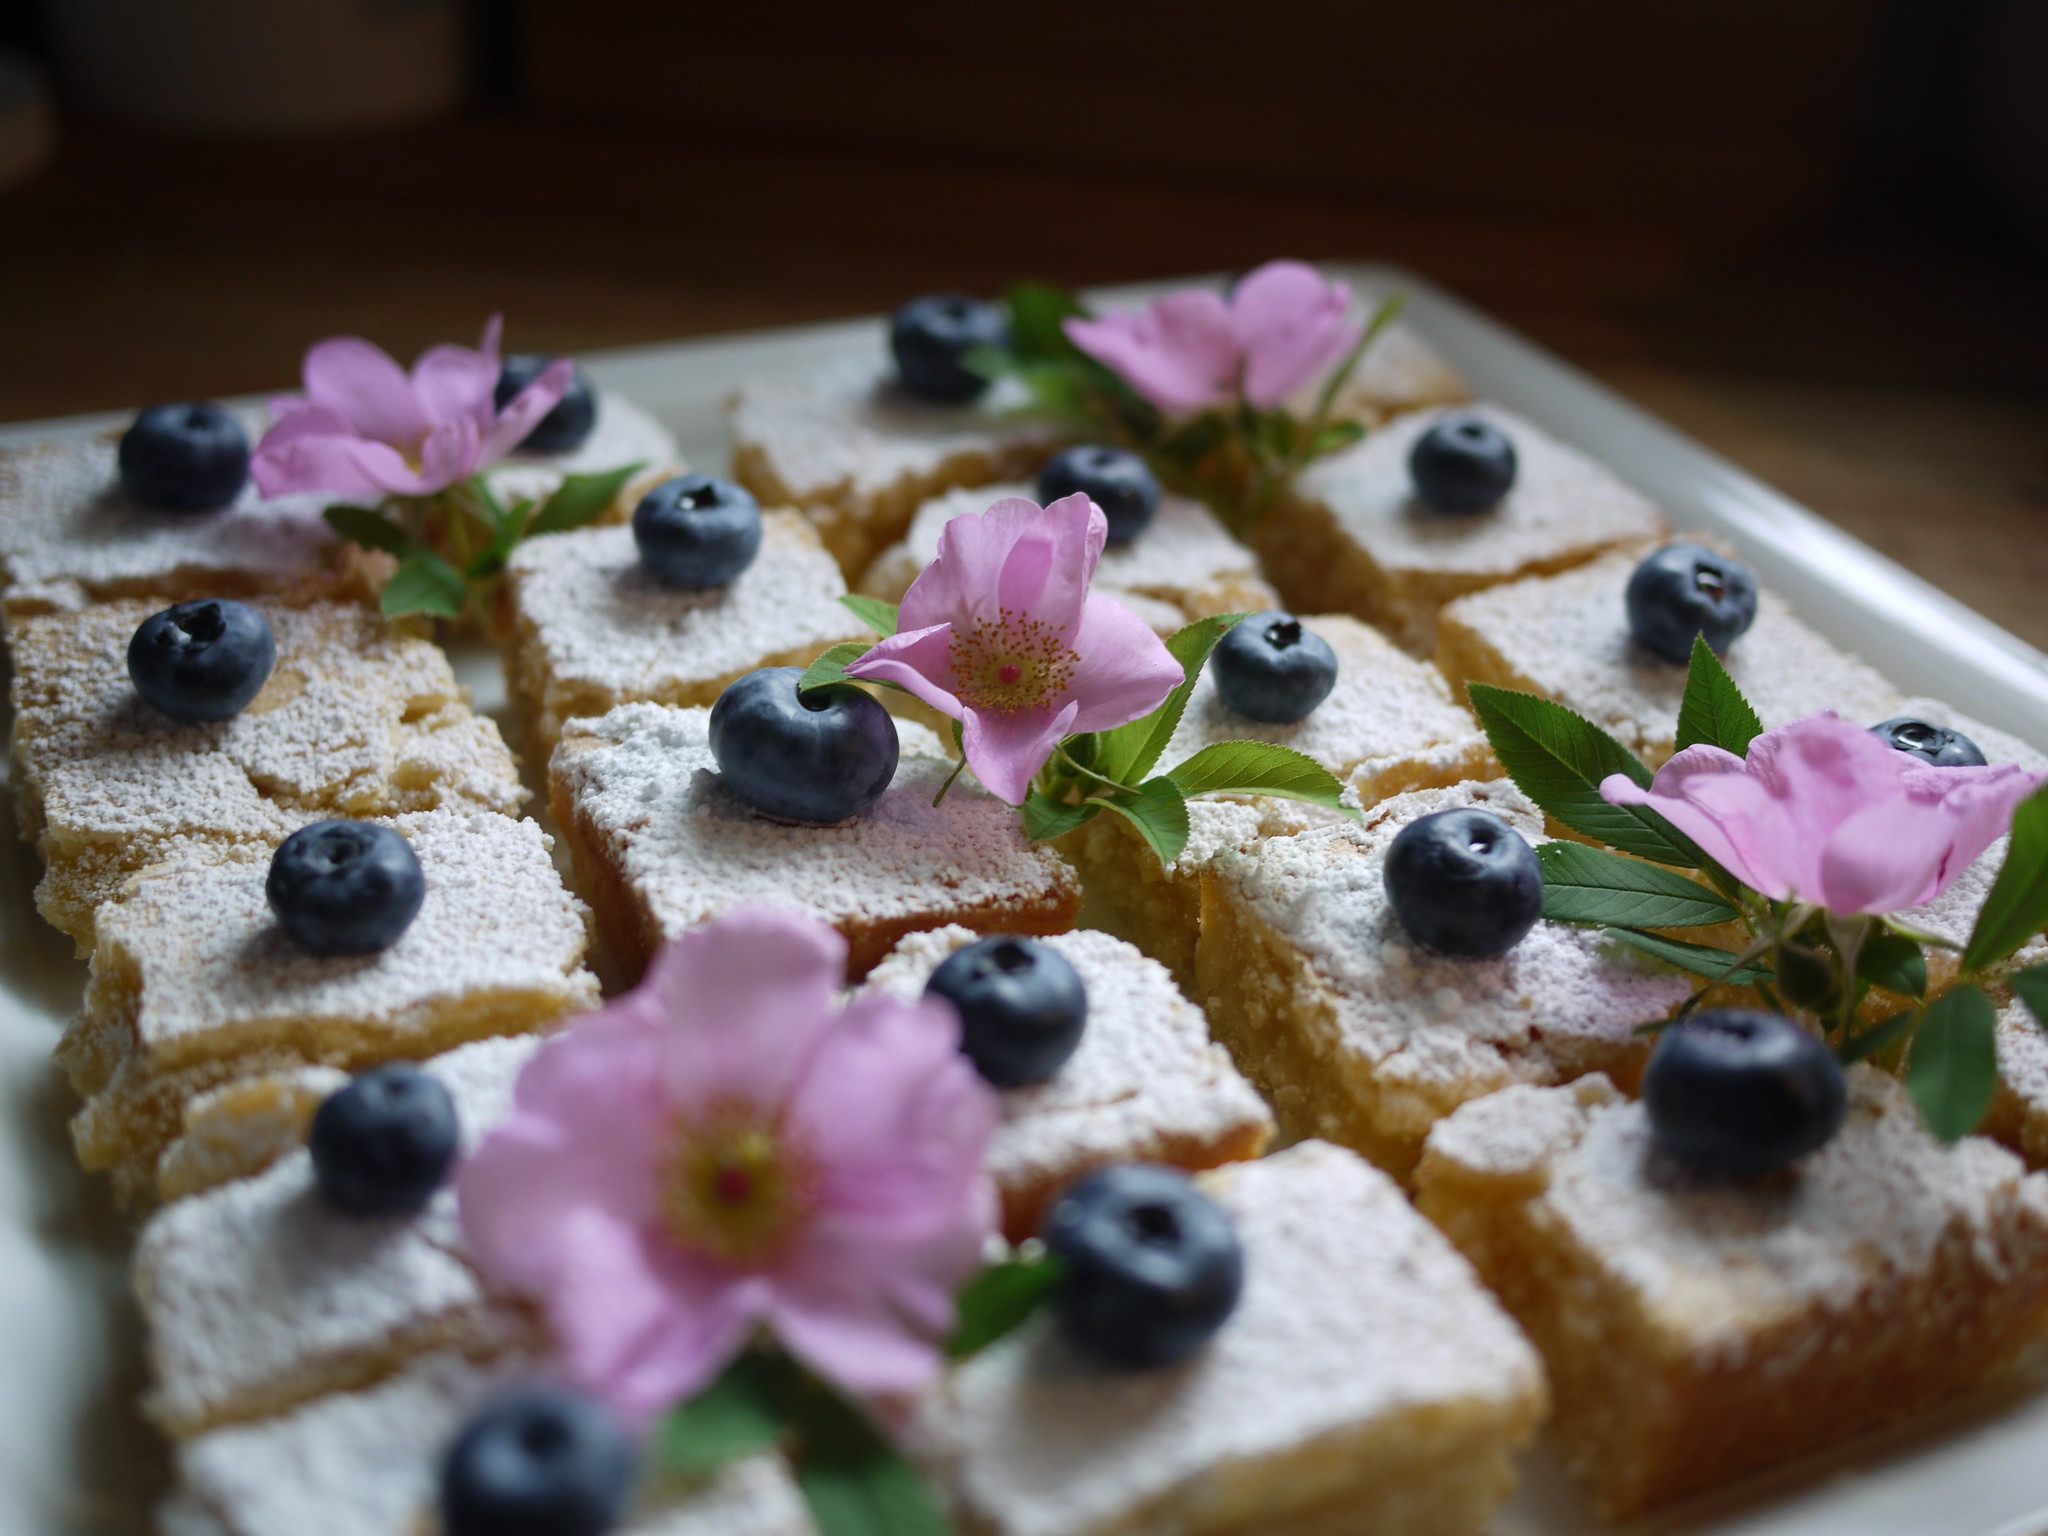 Sweet Summer Bliss: Blueberry Lemon Bars – A Baking Delight for July